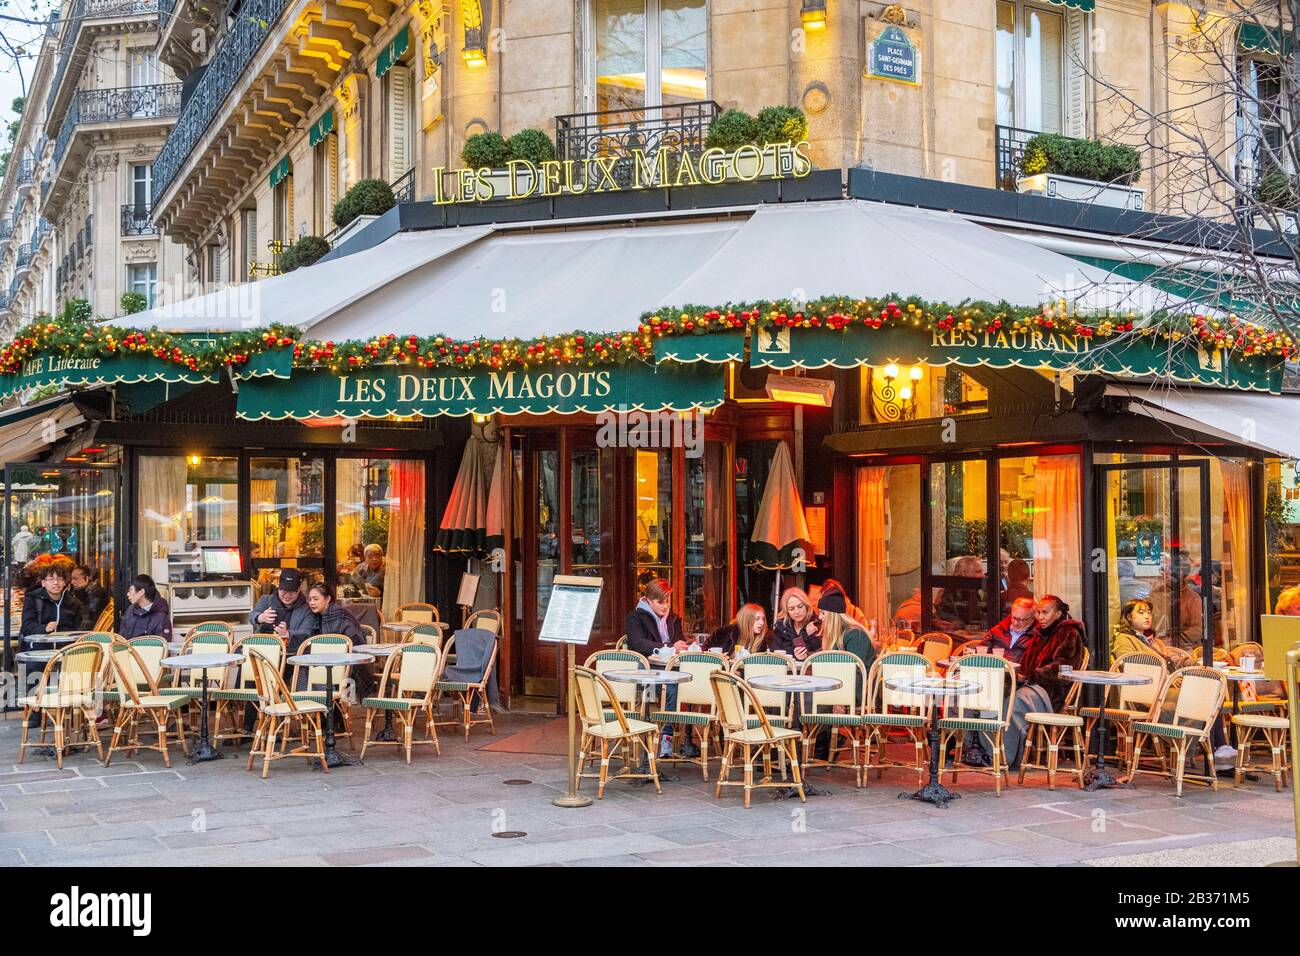 France, Paris, Saint Germain des Près district, the Cafe Les Deux Magots with Christmas decorations Stock Photo